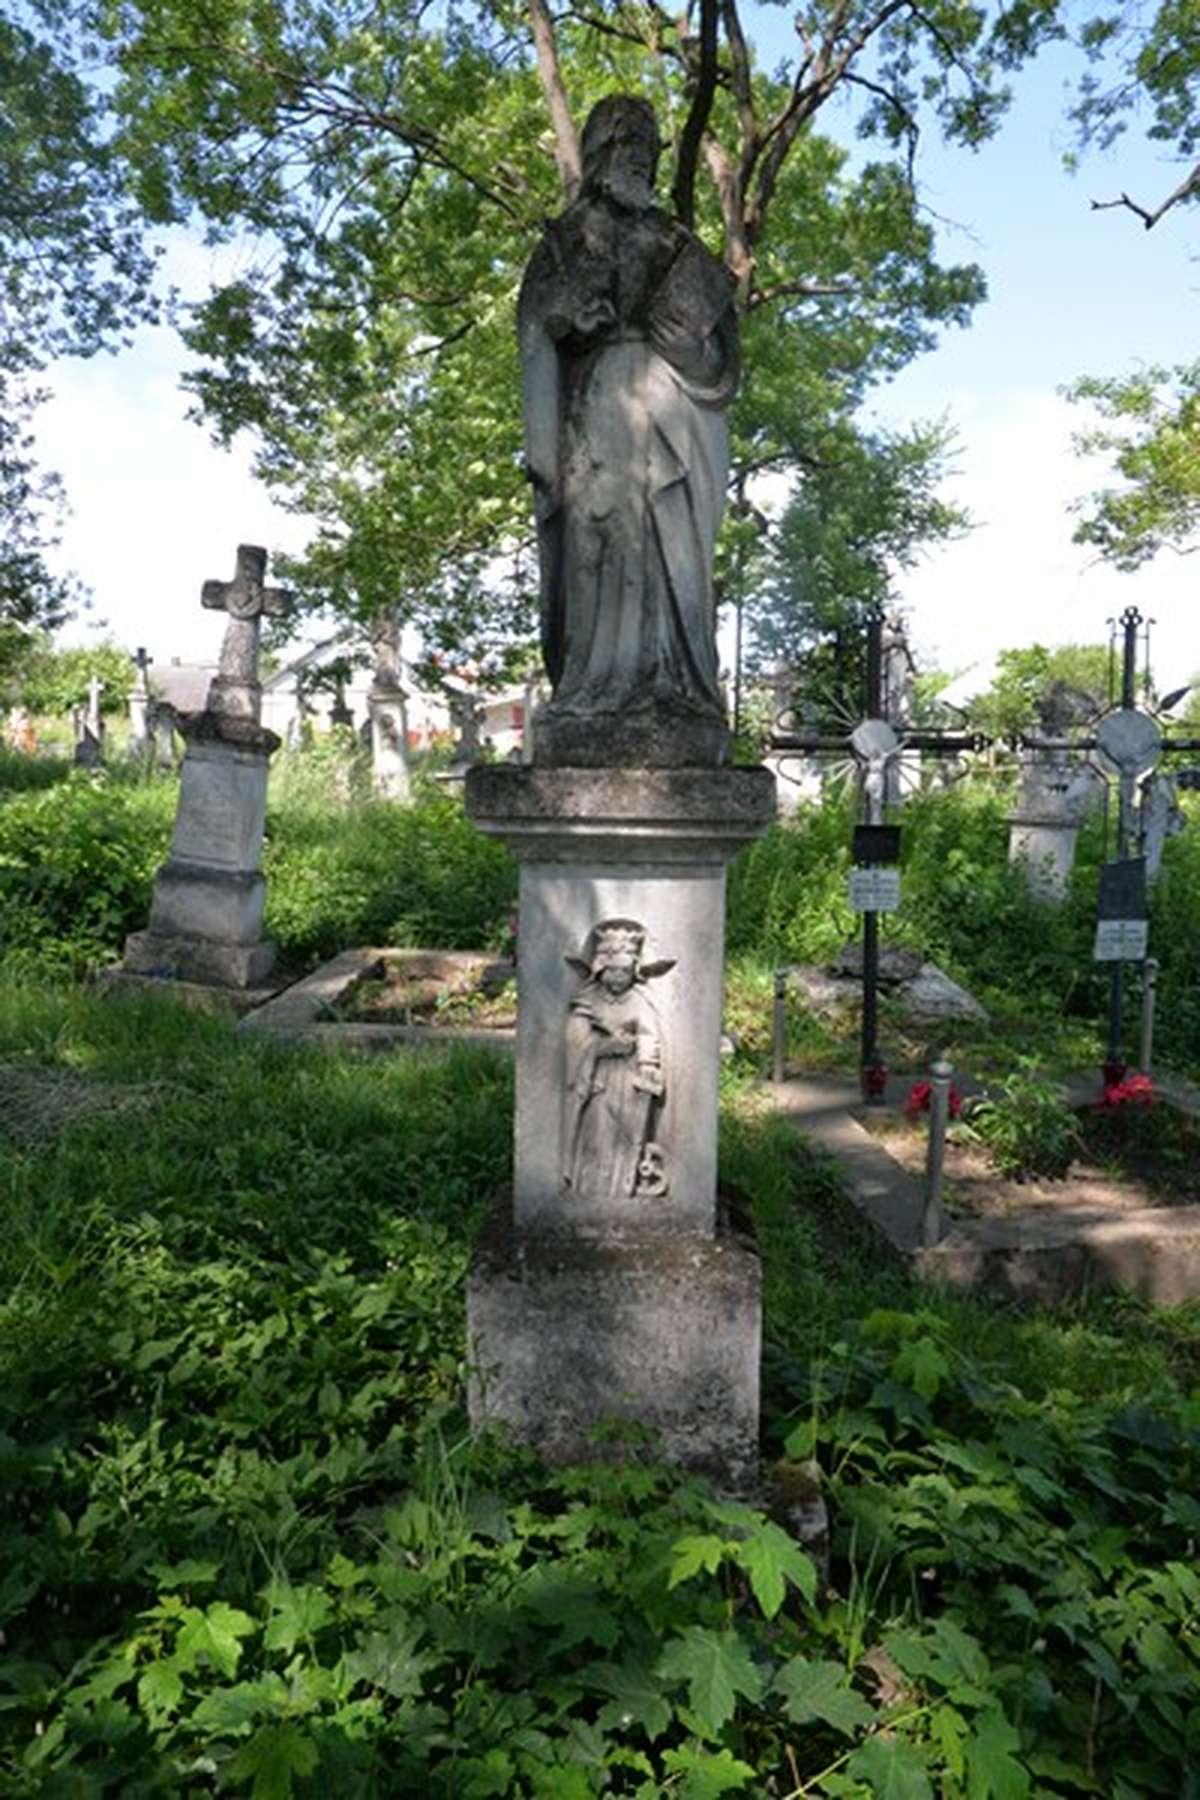 Nagrobek Piotra Leśniowskiego, cmentarz w Zbarażu, stan z 2018